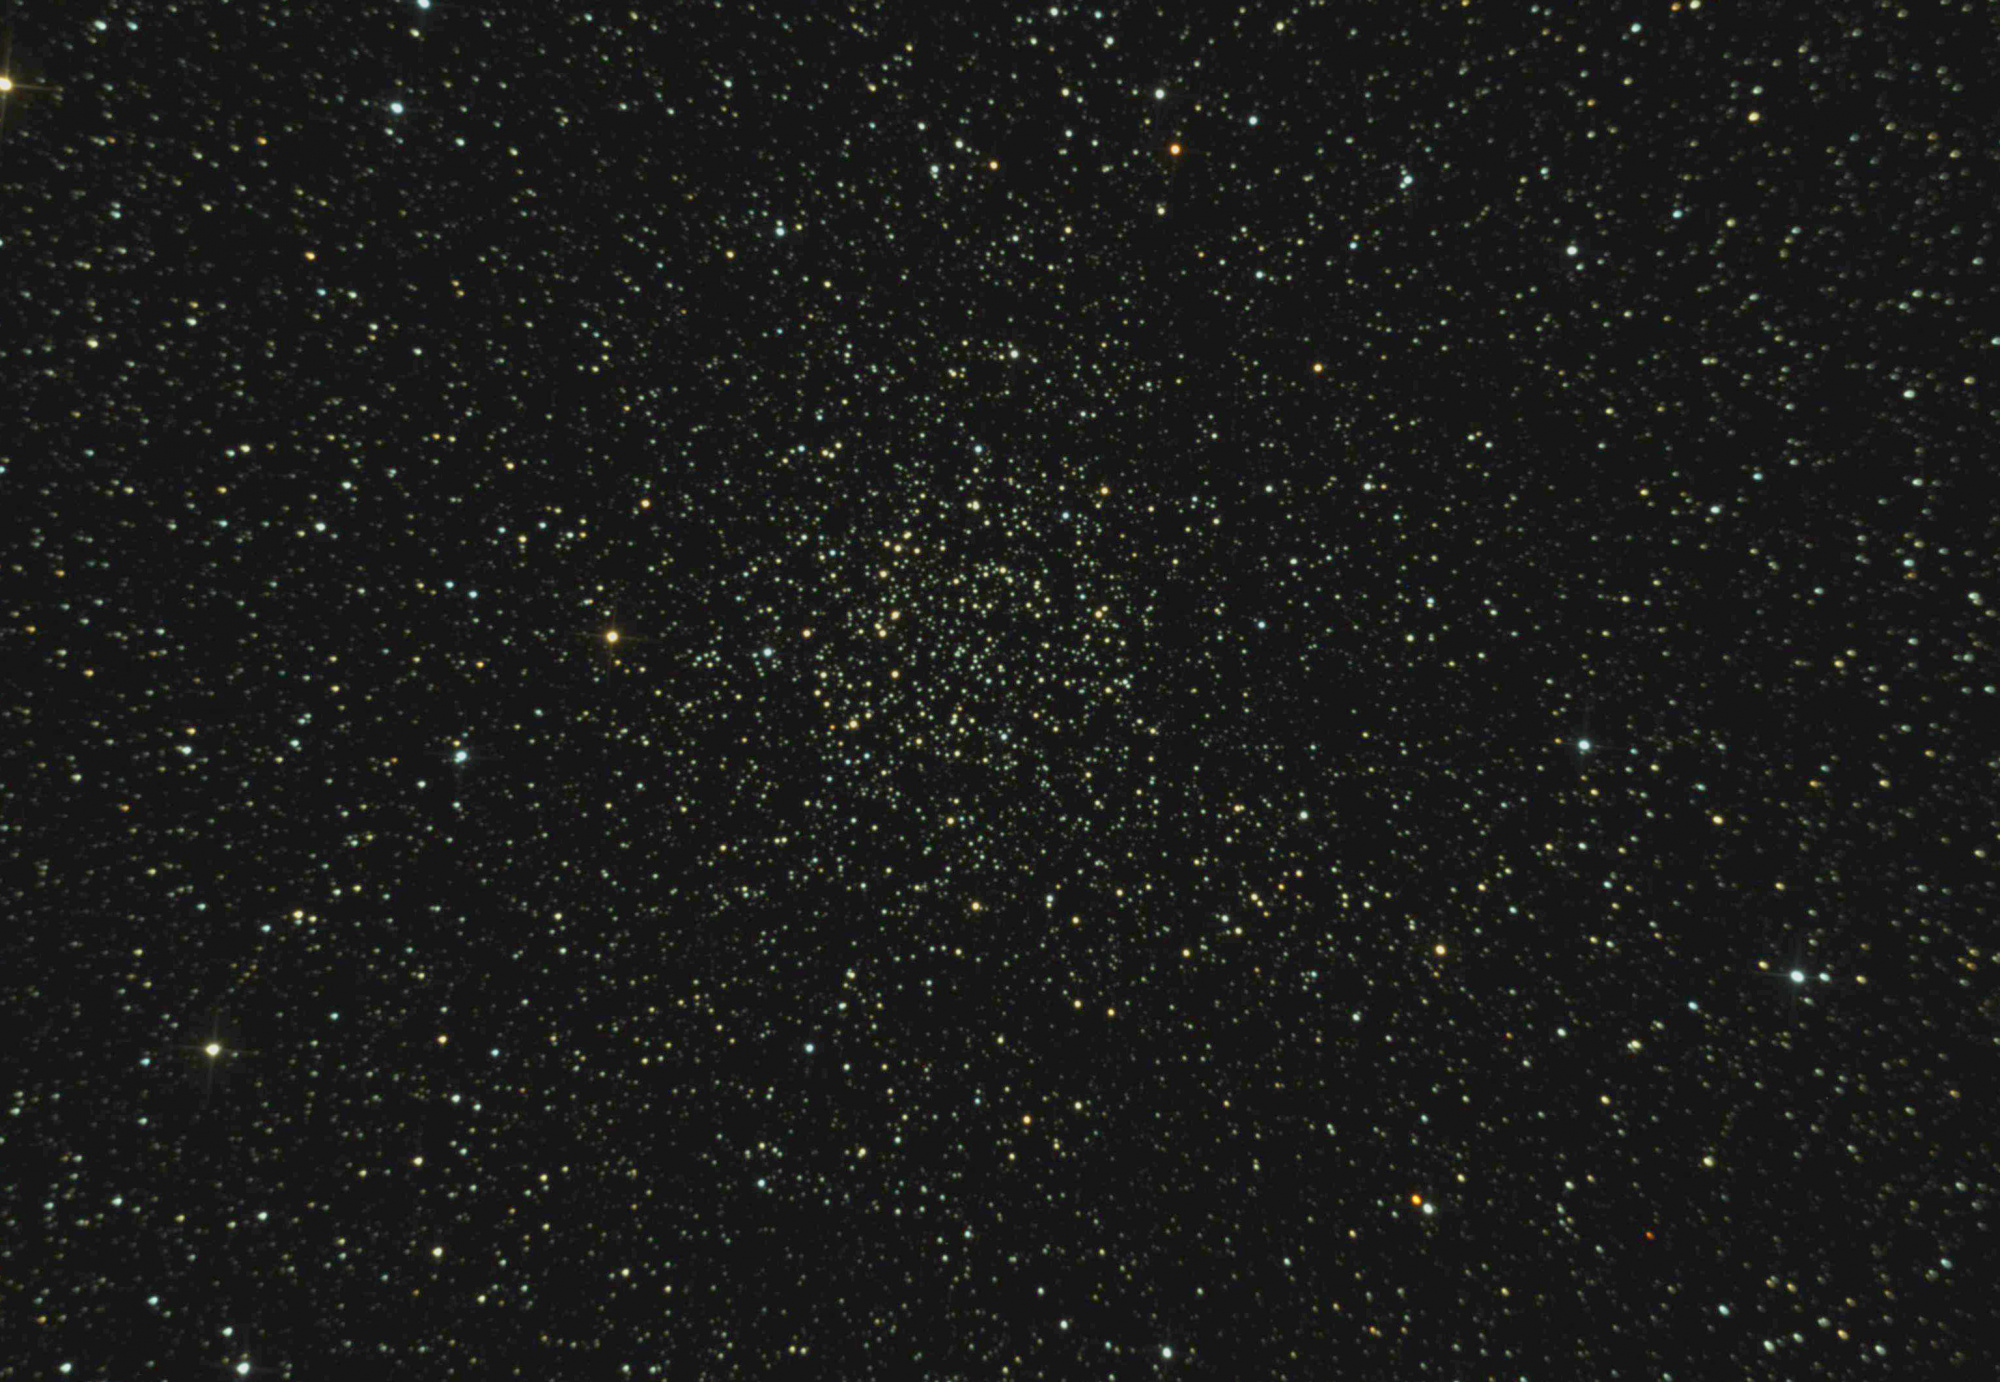 5d6ccf165c3de_NGC7789niveauxpsp.thumb.jpg.900a21b5d2478a44cb9bceca03c37dc2.jpg.231f84b4534ecca4a77548bf7abafbbe.jpg